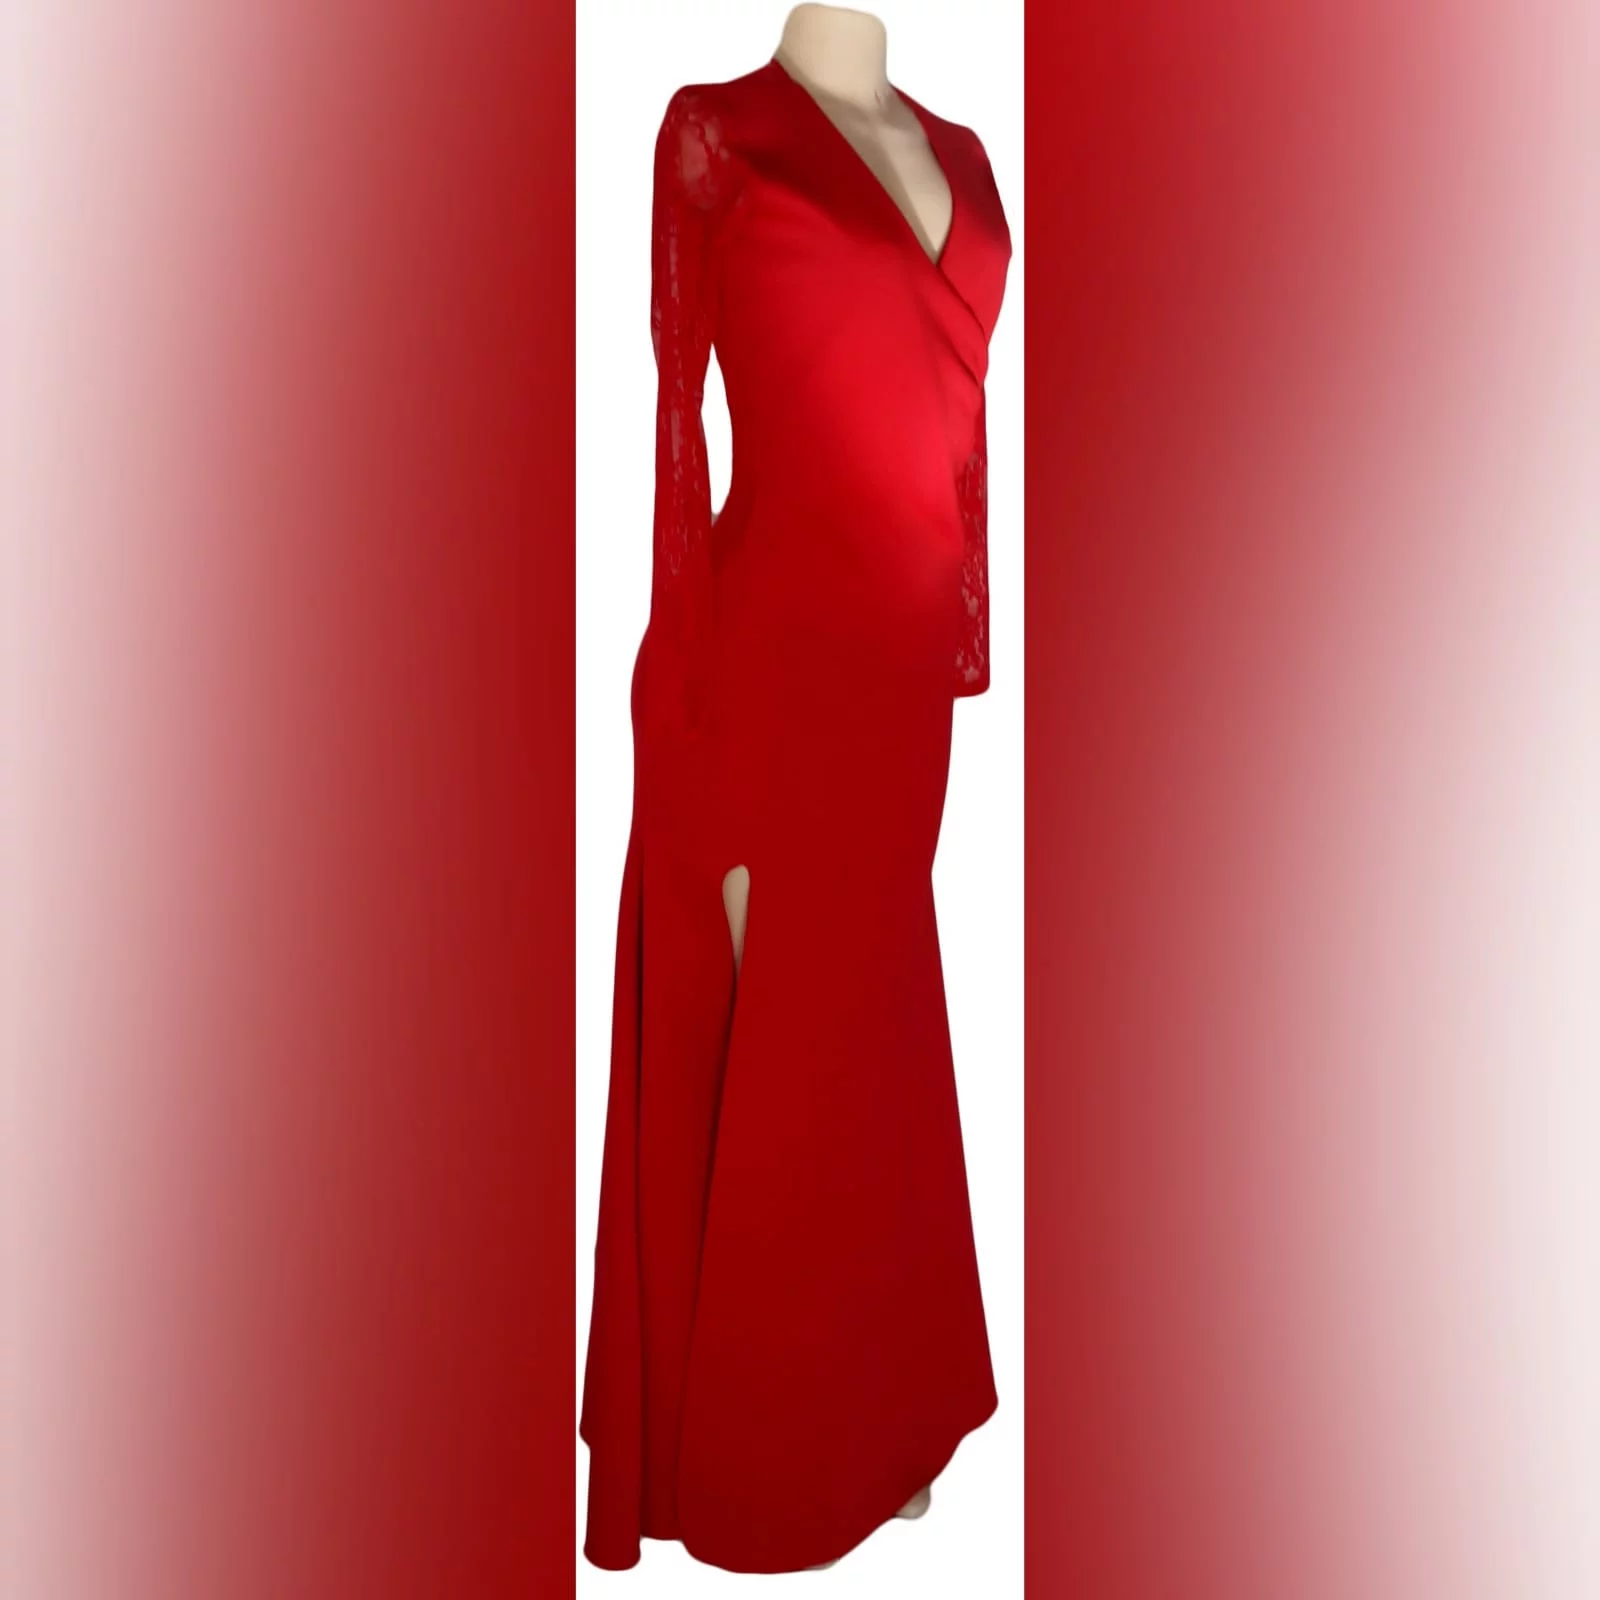 Vestido de festa vermelho com busto cruzado 6 vestido de festa vermelho com busto cruzado, com mangas de renda longas. Com decote nas costas em renda translucida. Com uma racha